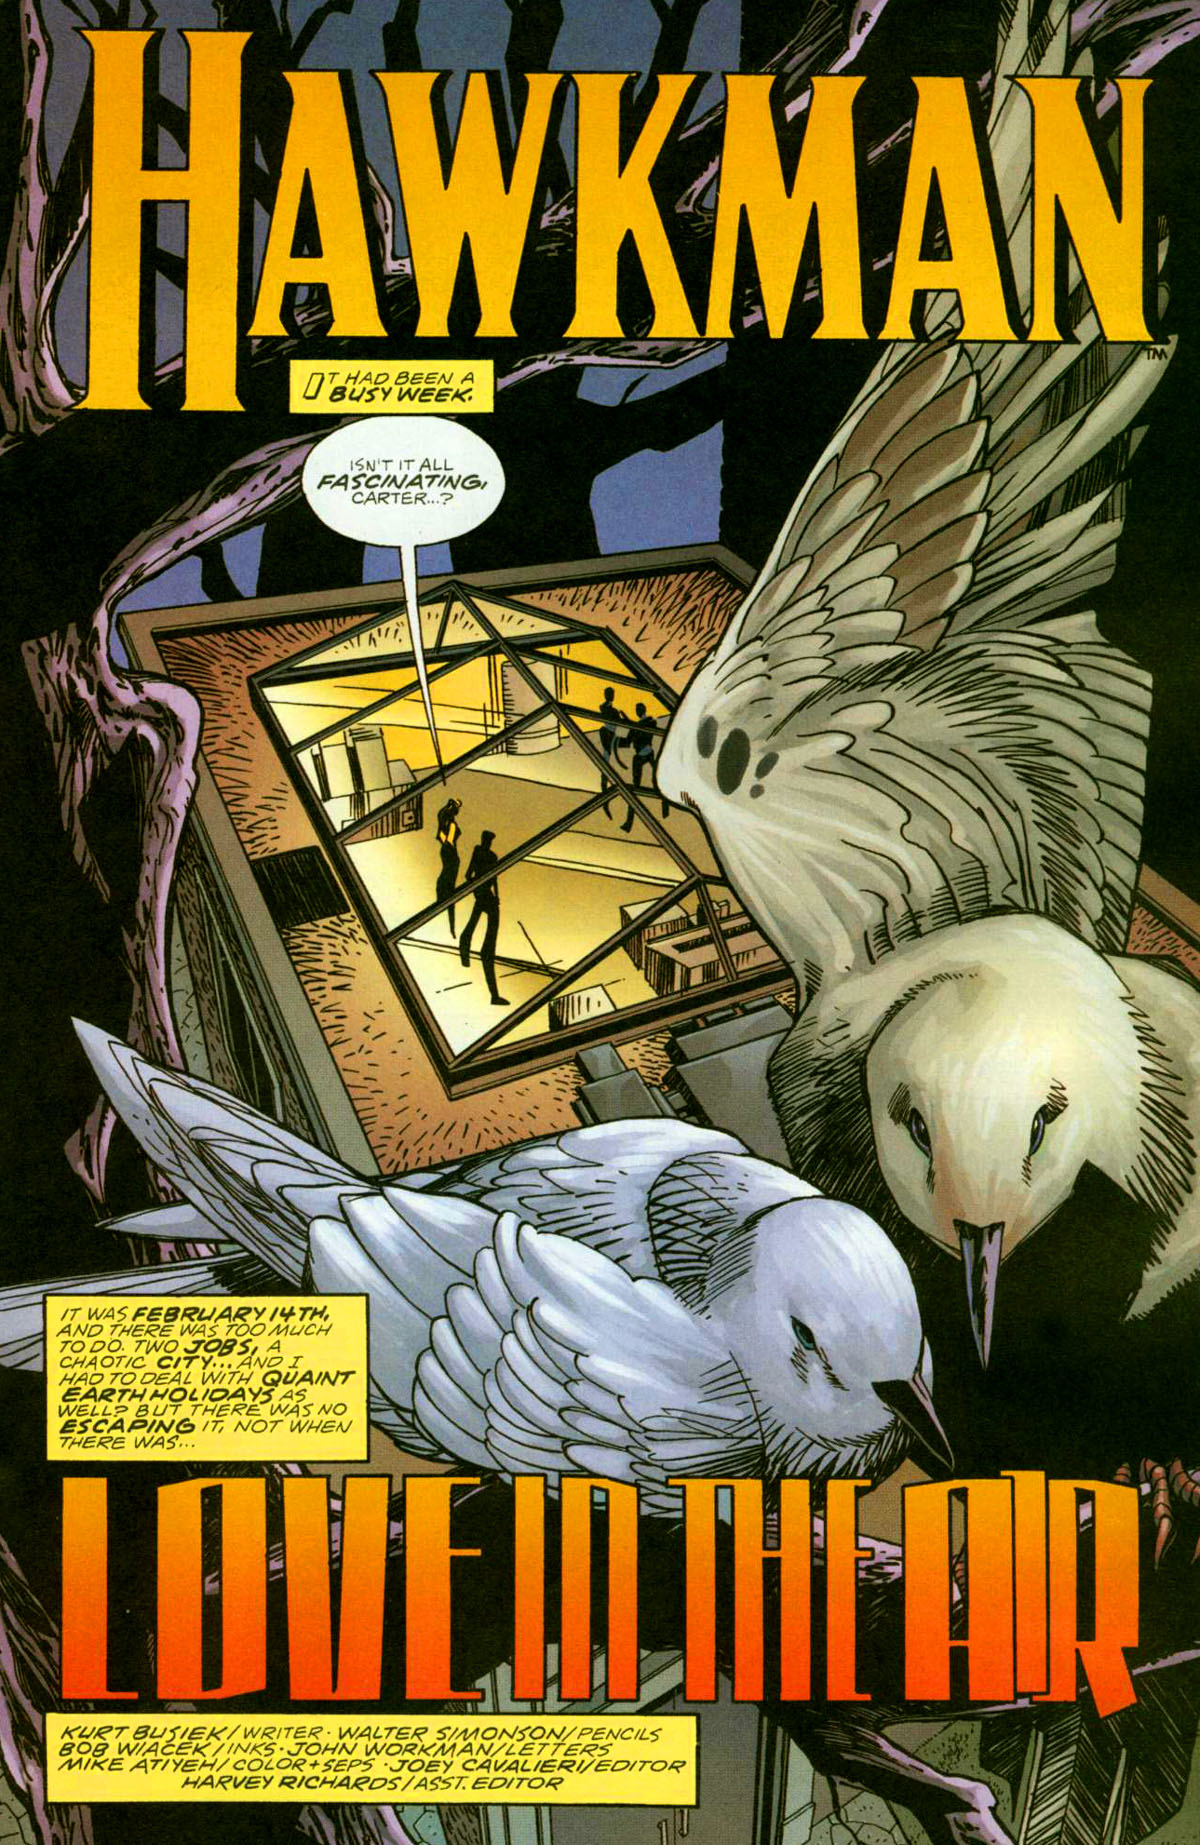 Read online DC Comics Presents (2004) comic -  Issue # Hawkman - 14